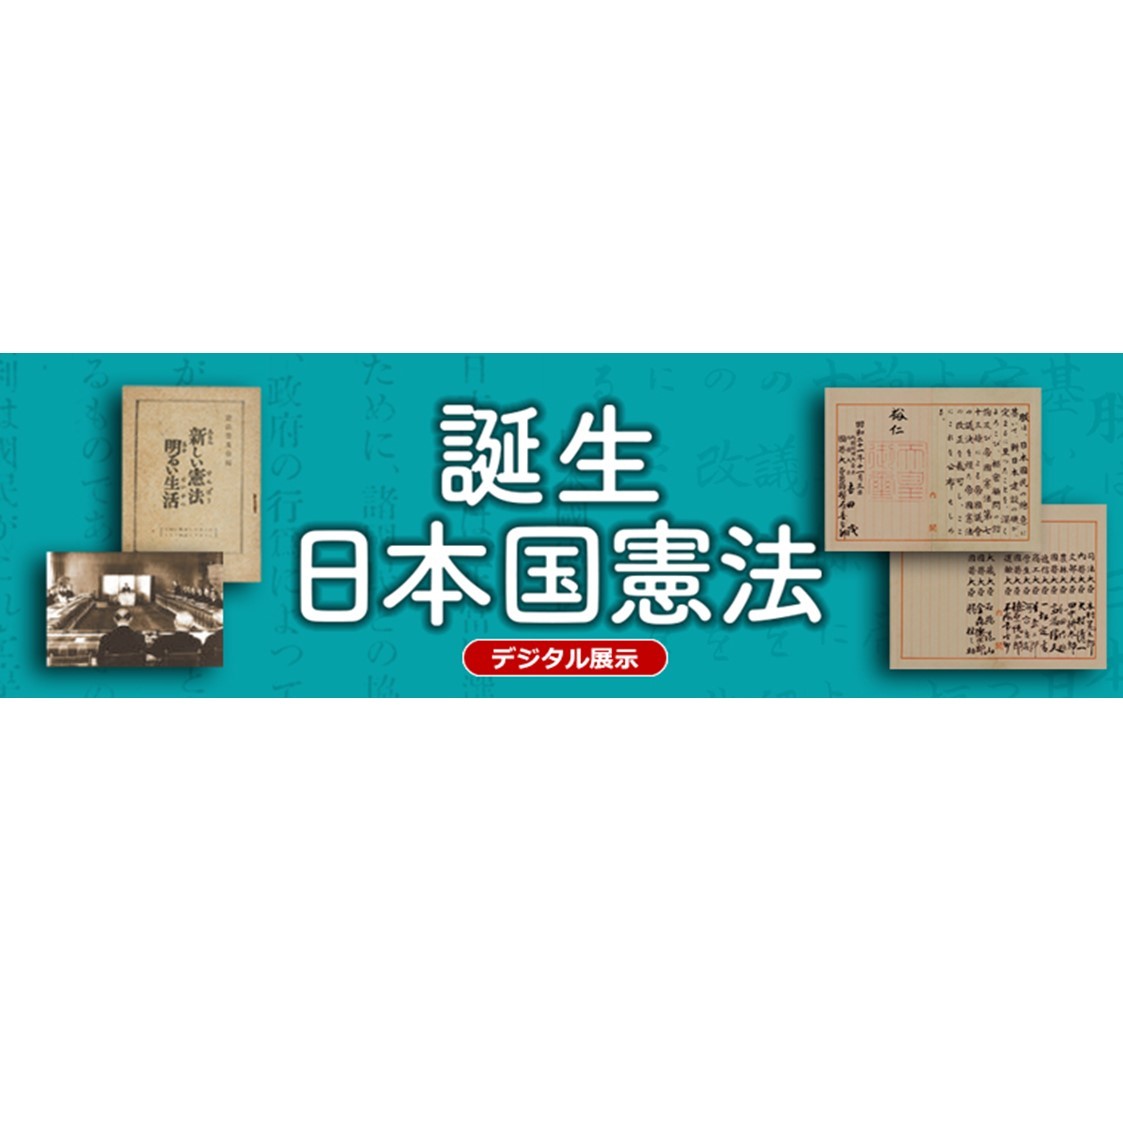 「日本国憲法」原本展示は昨日で終了しました。ご来場いただき、ありがとうございました。「日本国憲法」についてはデジタル展示「誕生　日本国憲法」や「再建日本の出発」でも紹介しています。ぜひご覧ください。archives.go.jp/exhibition/dig…